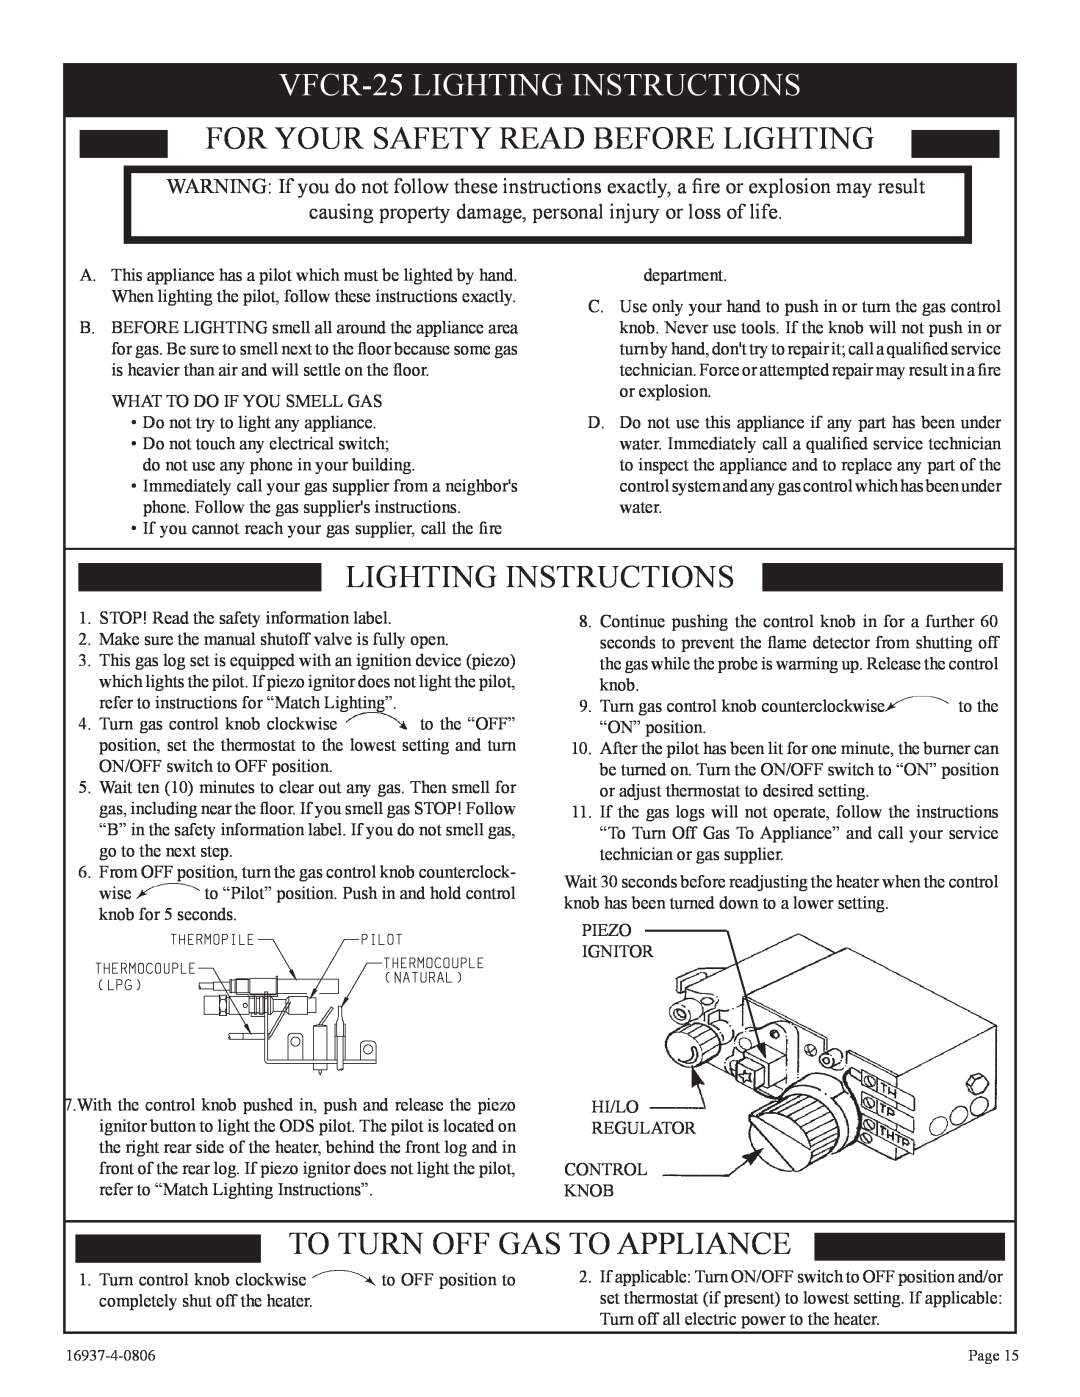 Empire Comfort Systems VFCM-25-3. VFCR-25-3, VFCT25-3 VFCR-25LIGHTING INSTRUCTIONS, For Your Safety Read Before Lighting 